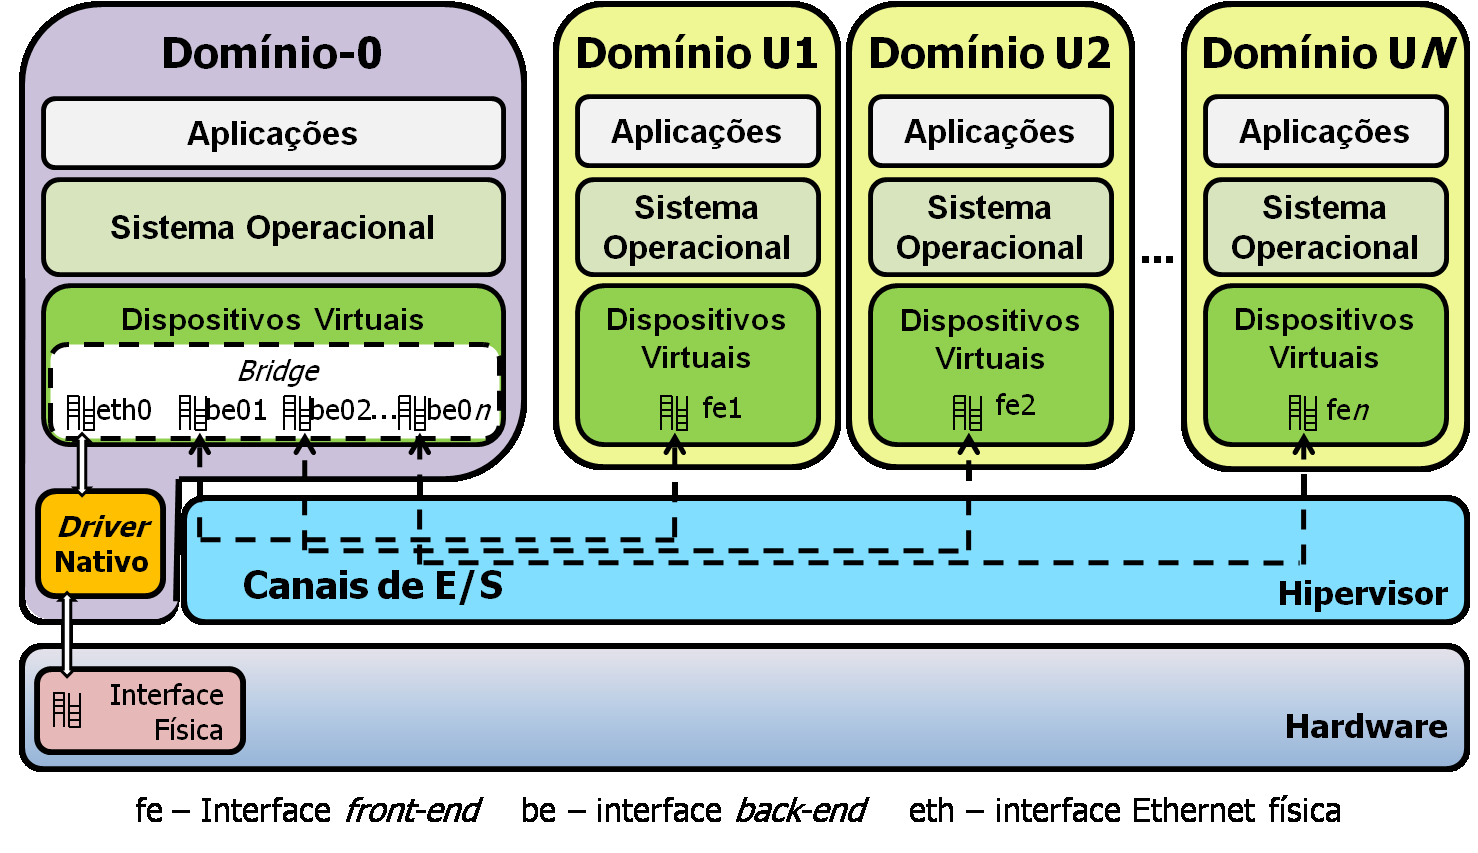 Figura 1.1: Arquitetura da plataforma de virtualização Xen. visor do Xen. O hipervisor do Xen implementa um mecanismo de escalonamento dinâmico de vcpus sobre as CPUs reais.